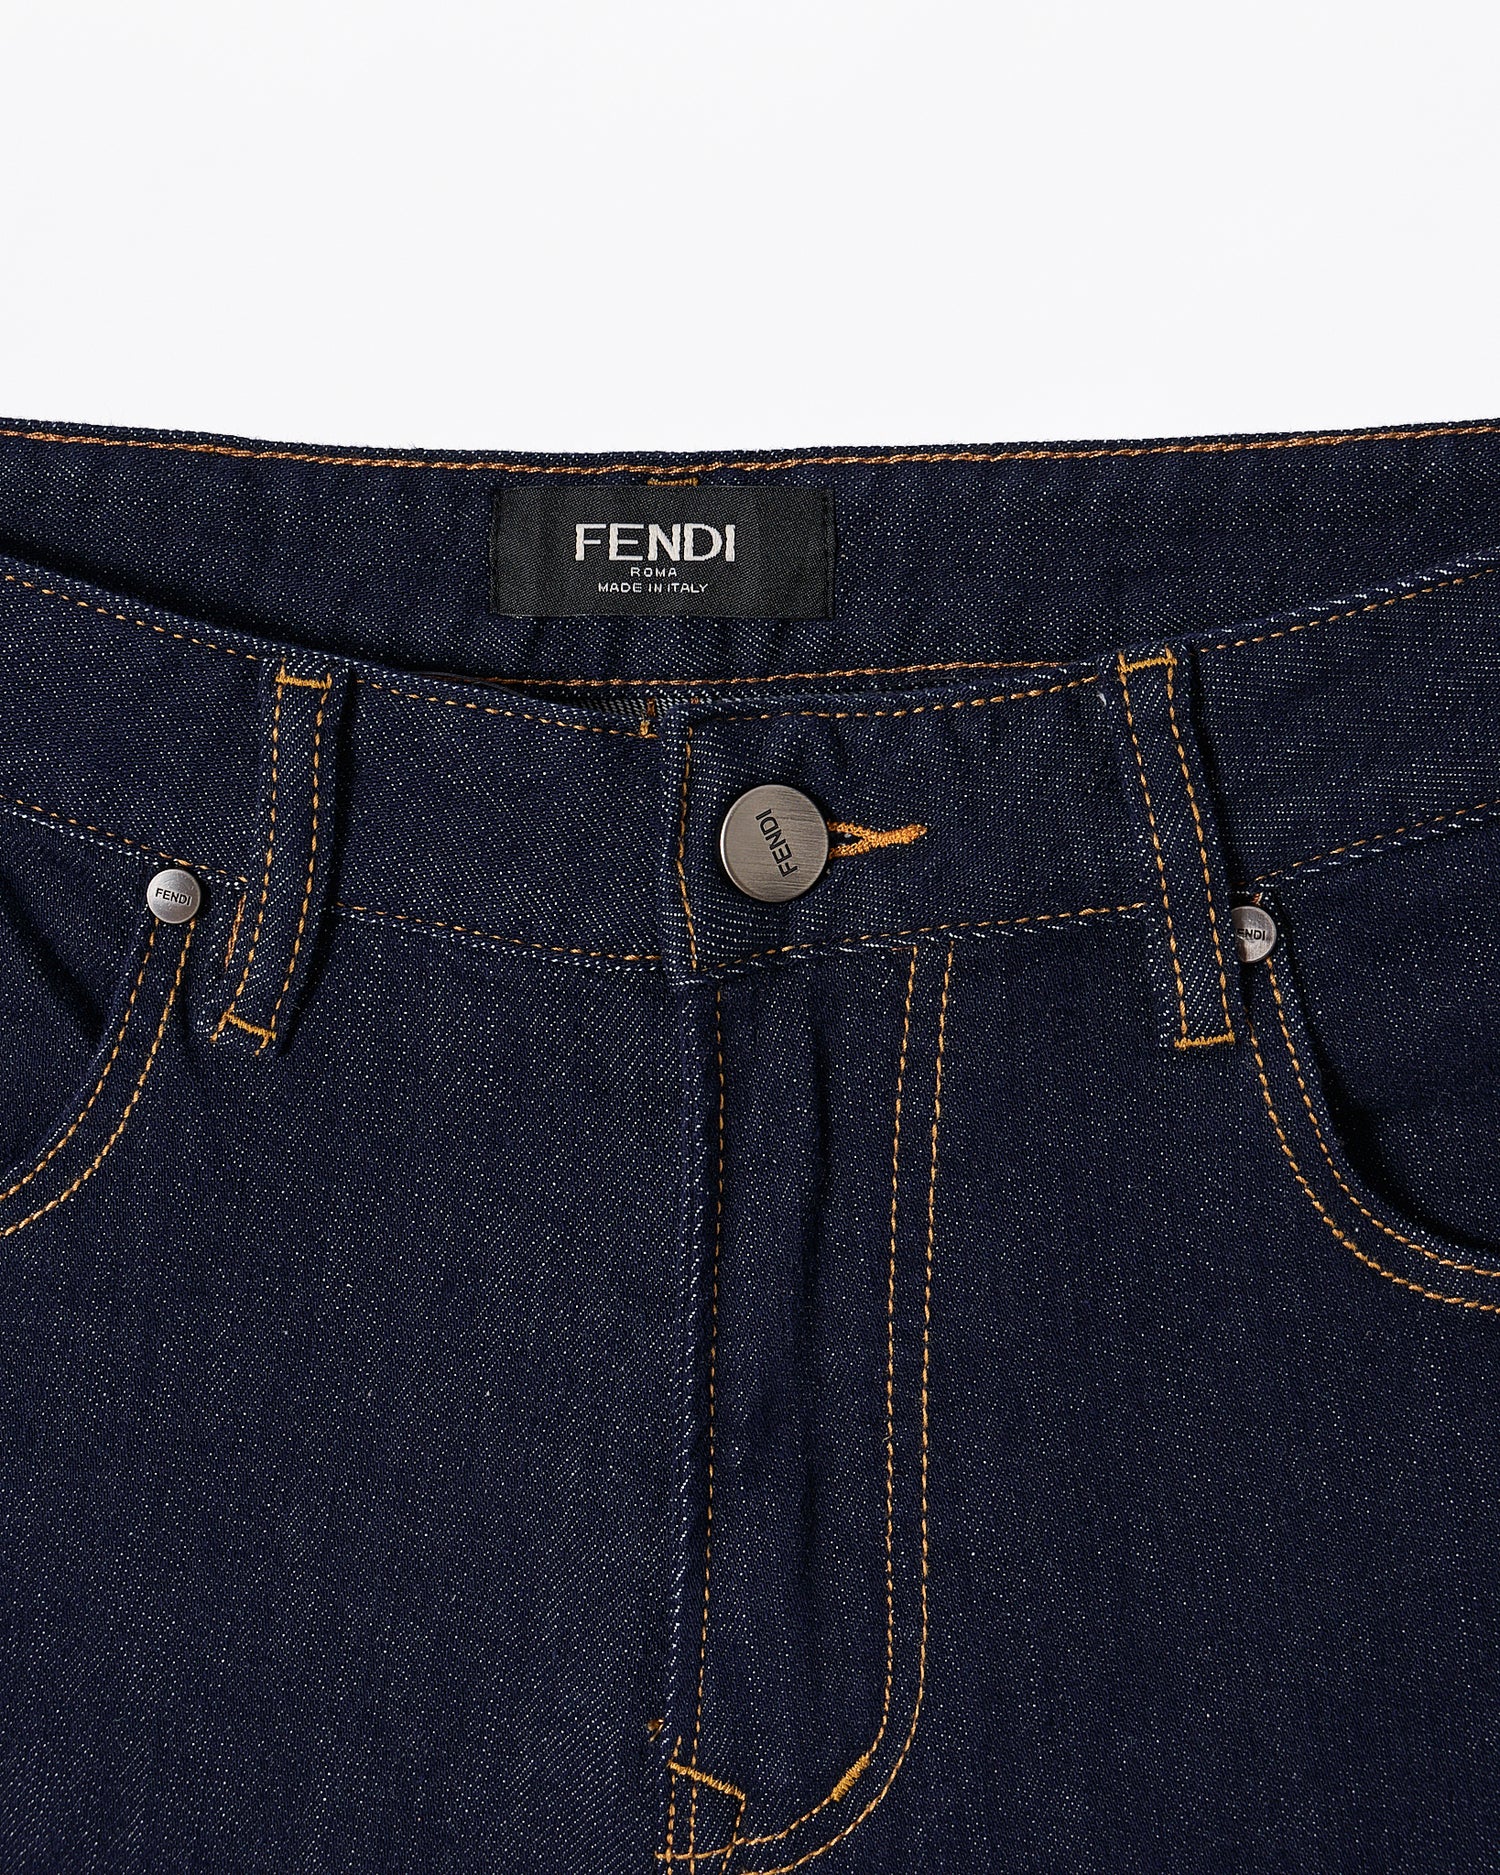 FEN Monogram Pocket Printed Men Blue Jeans 69.90